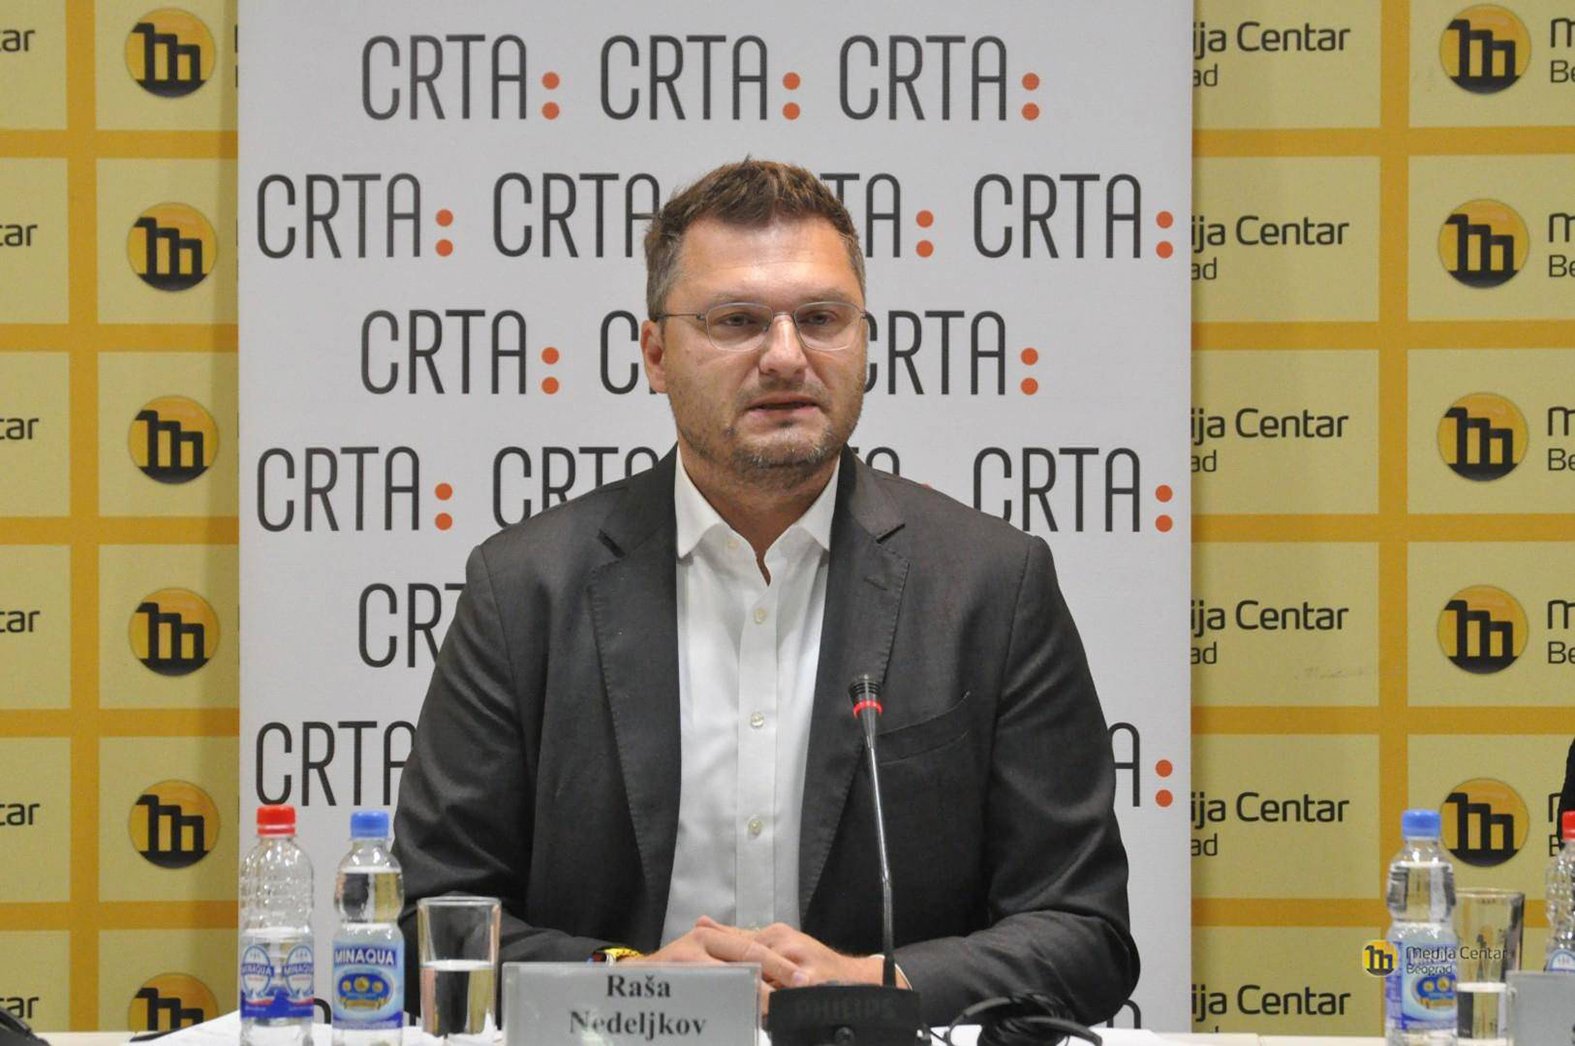 "Predškolac kao siguran glas vlasti, ponovo falsifikovanje potpisa": CRTA u izveštaju povodom beogradskih izbora pokazala da izborni uslovi nisu unapređeni 2